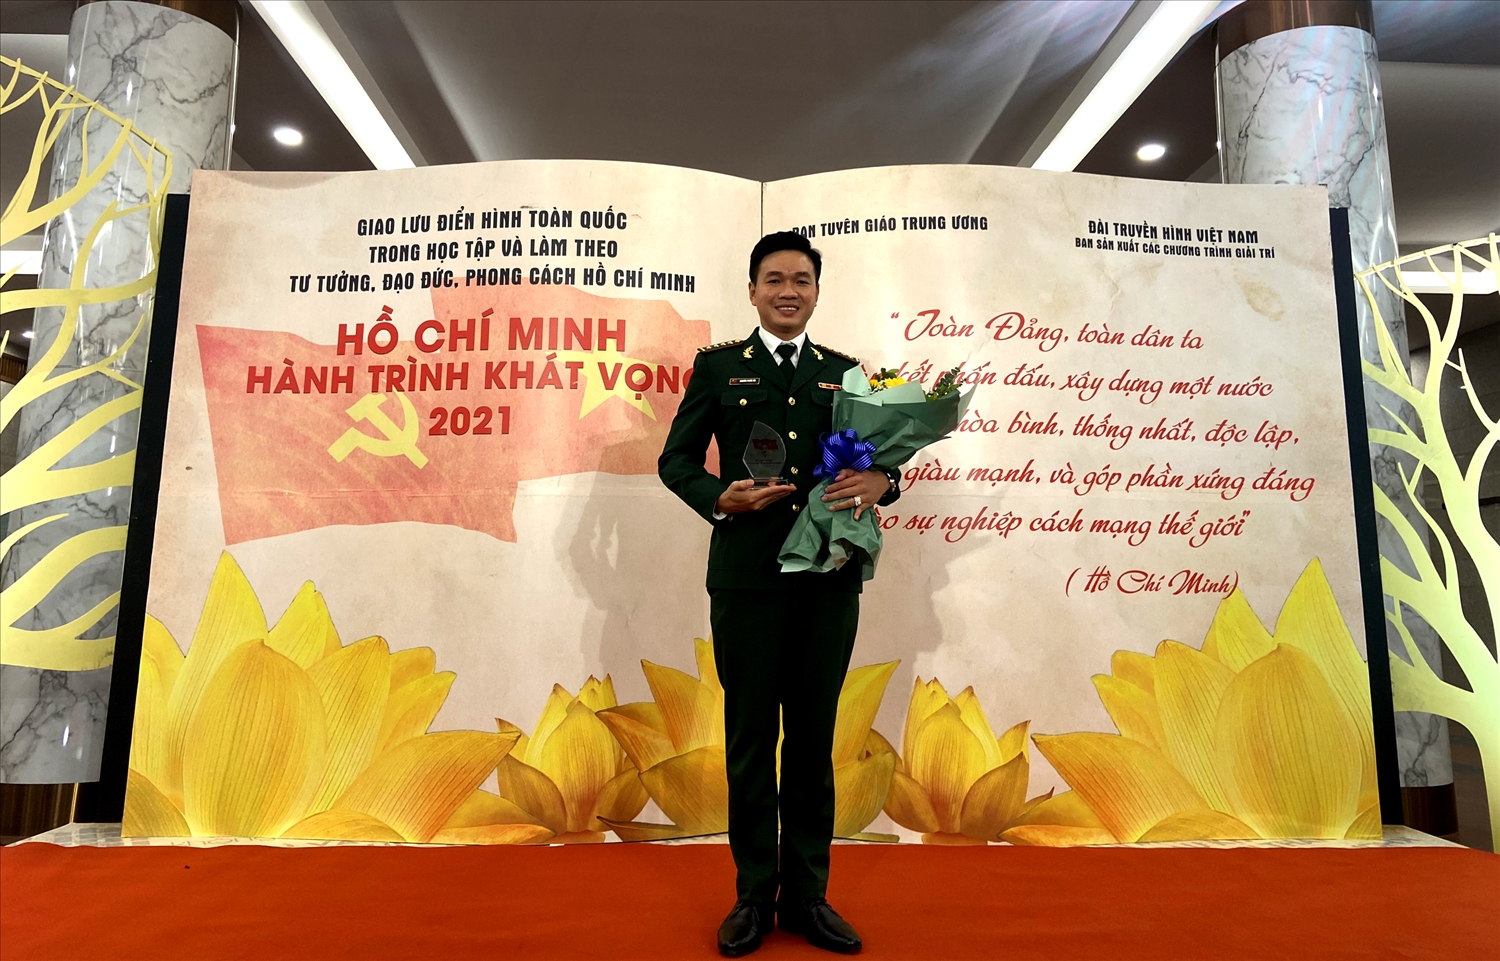 Đại úy Nguyễn Phước Tới vinh dự là đại diện duy nhất của tỉnh An Giang tham gia chương trình Giao lưu “Hồ Chí Minh-Hành trình khát vọng” vào tối 05/12/2021 do Ban Tuyên giáo Trung ương tổ chức